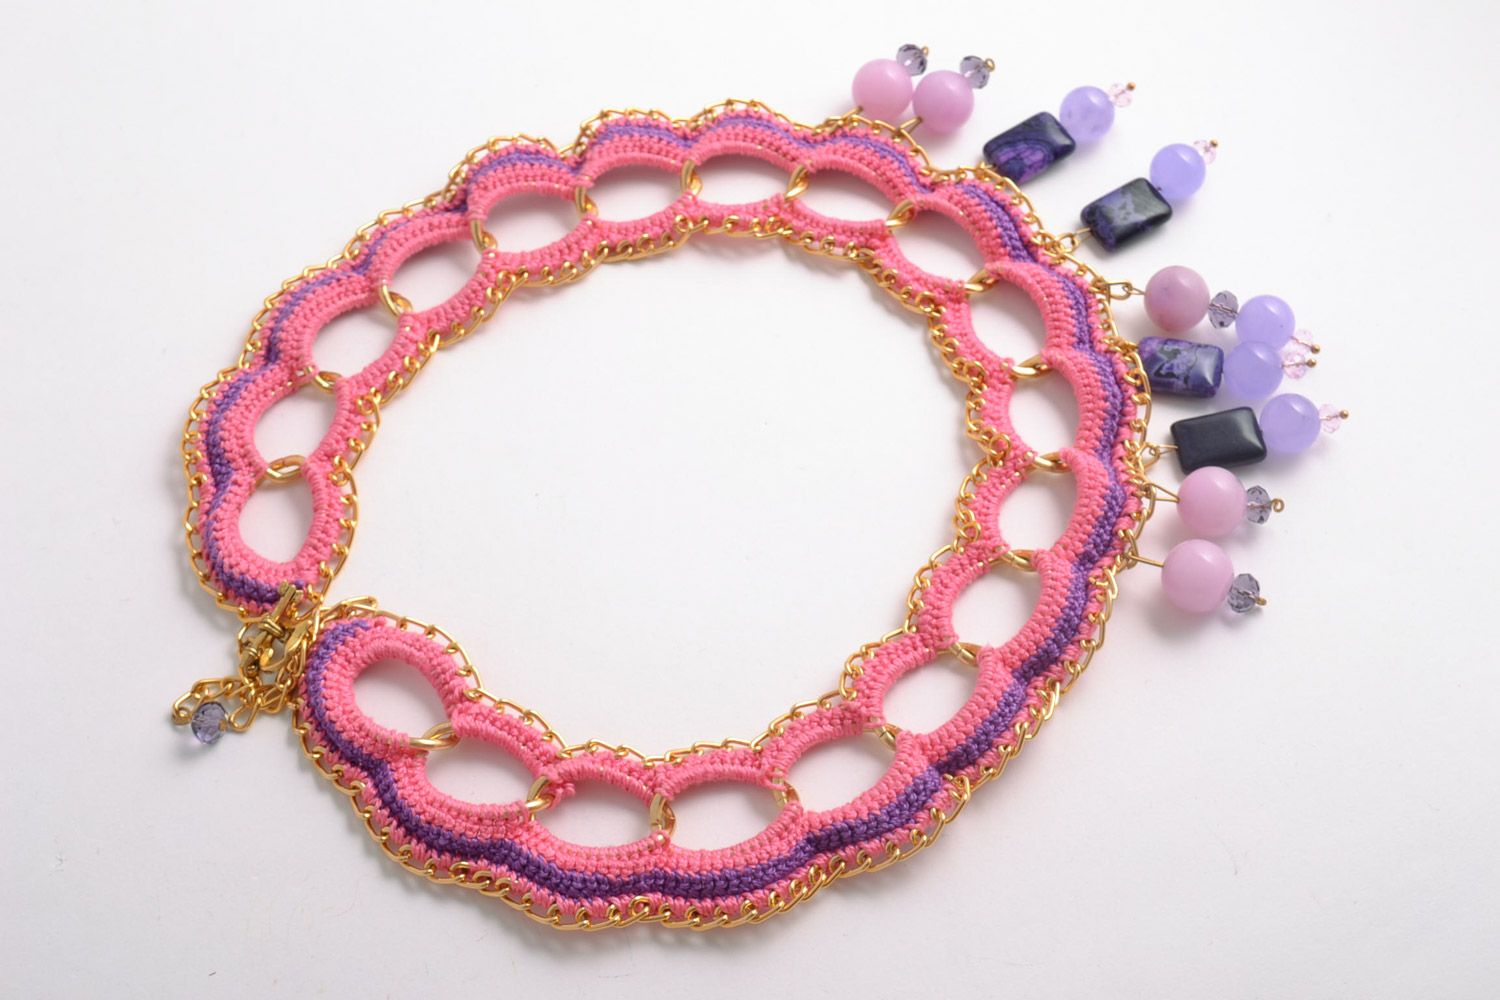 Textil Collier in Rosa aus Baumwollgarnen mit Achat Kristall Handarbeit  foto 5